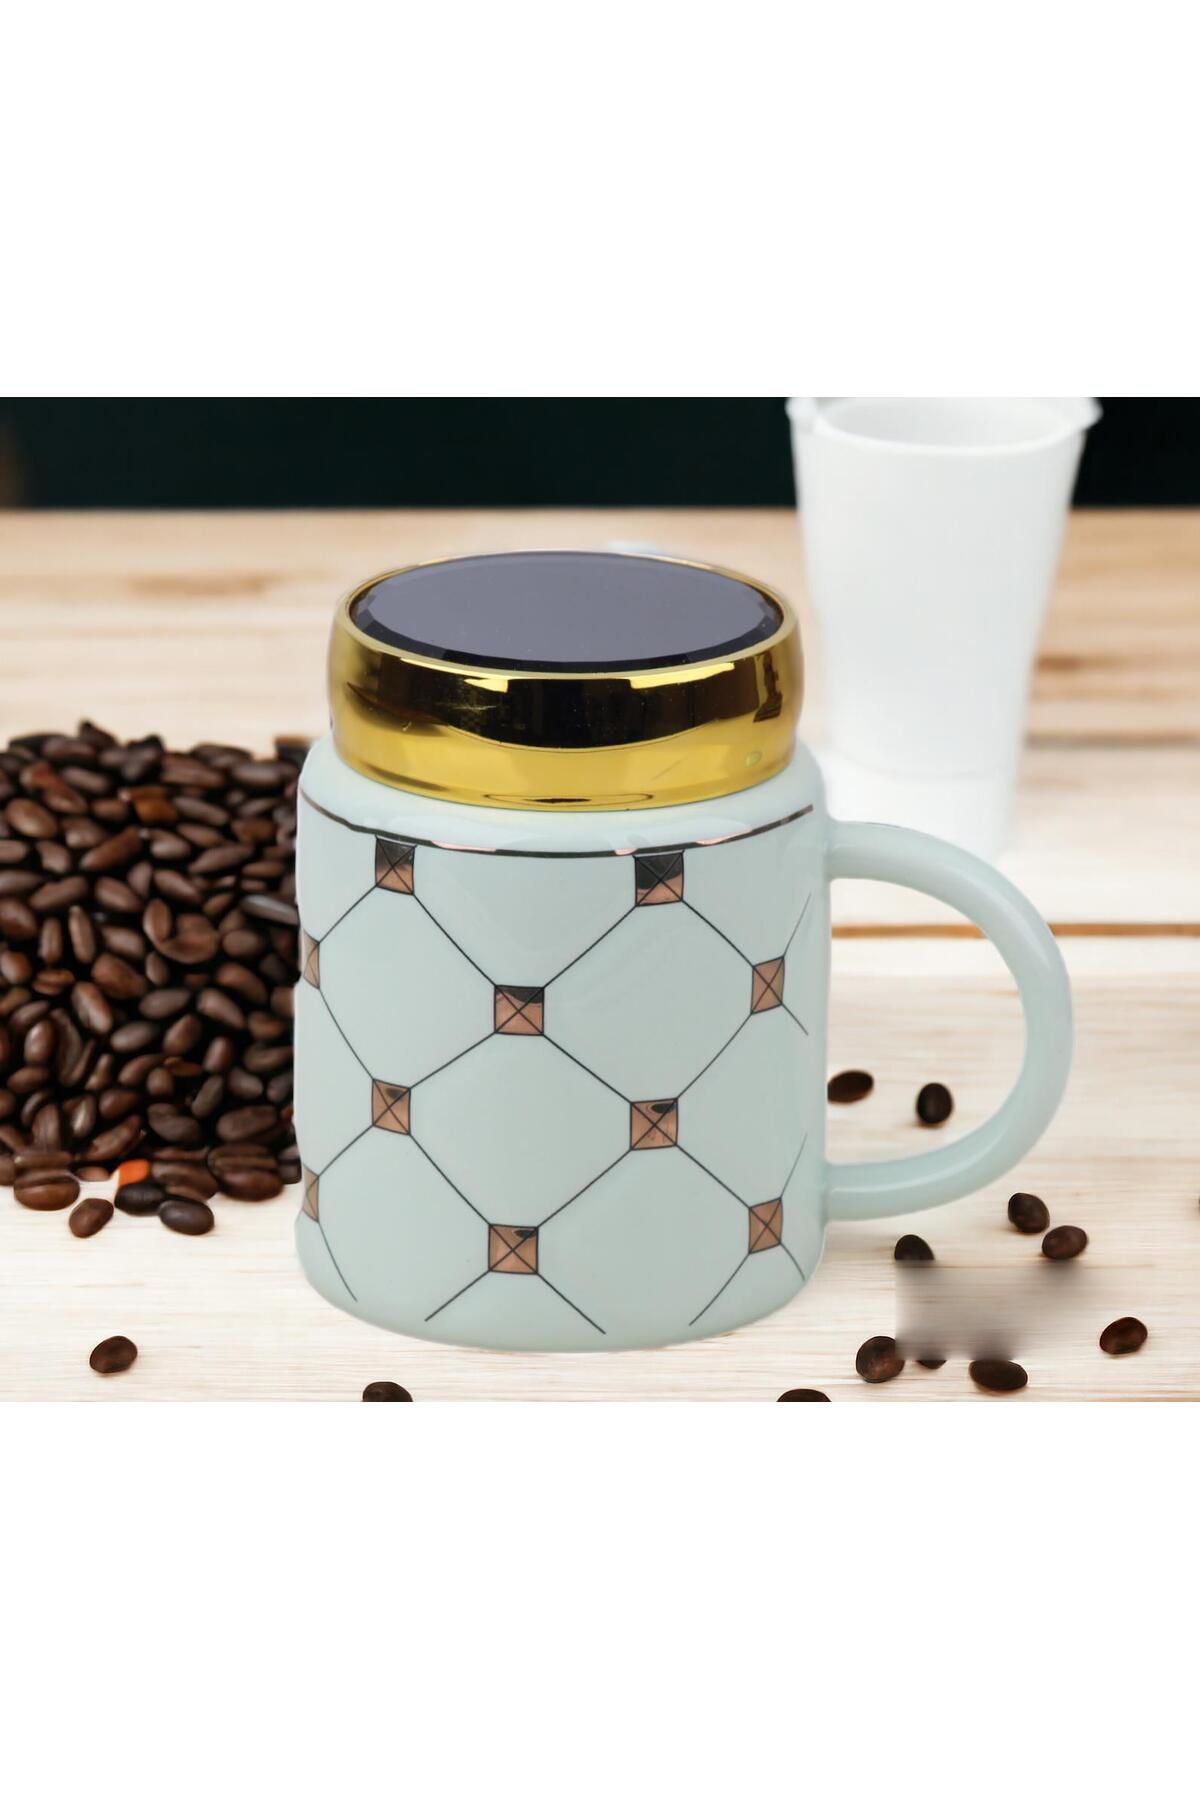 e-life shop Ekose Tasarımlı Aynalı Kapaklı Sıcak Tutan Kupa Bardak Fincan Mug Mini Motivasyon Termos 450 ml.